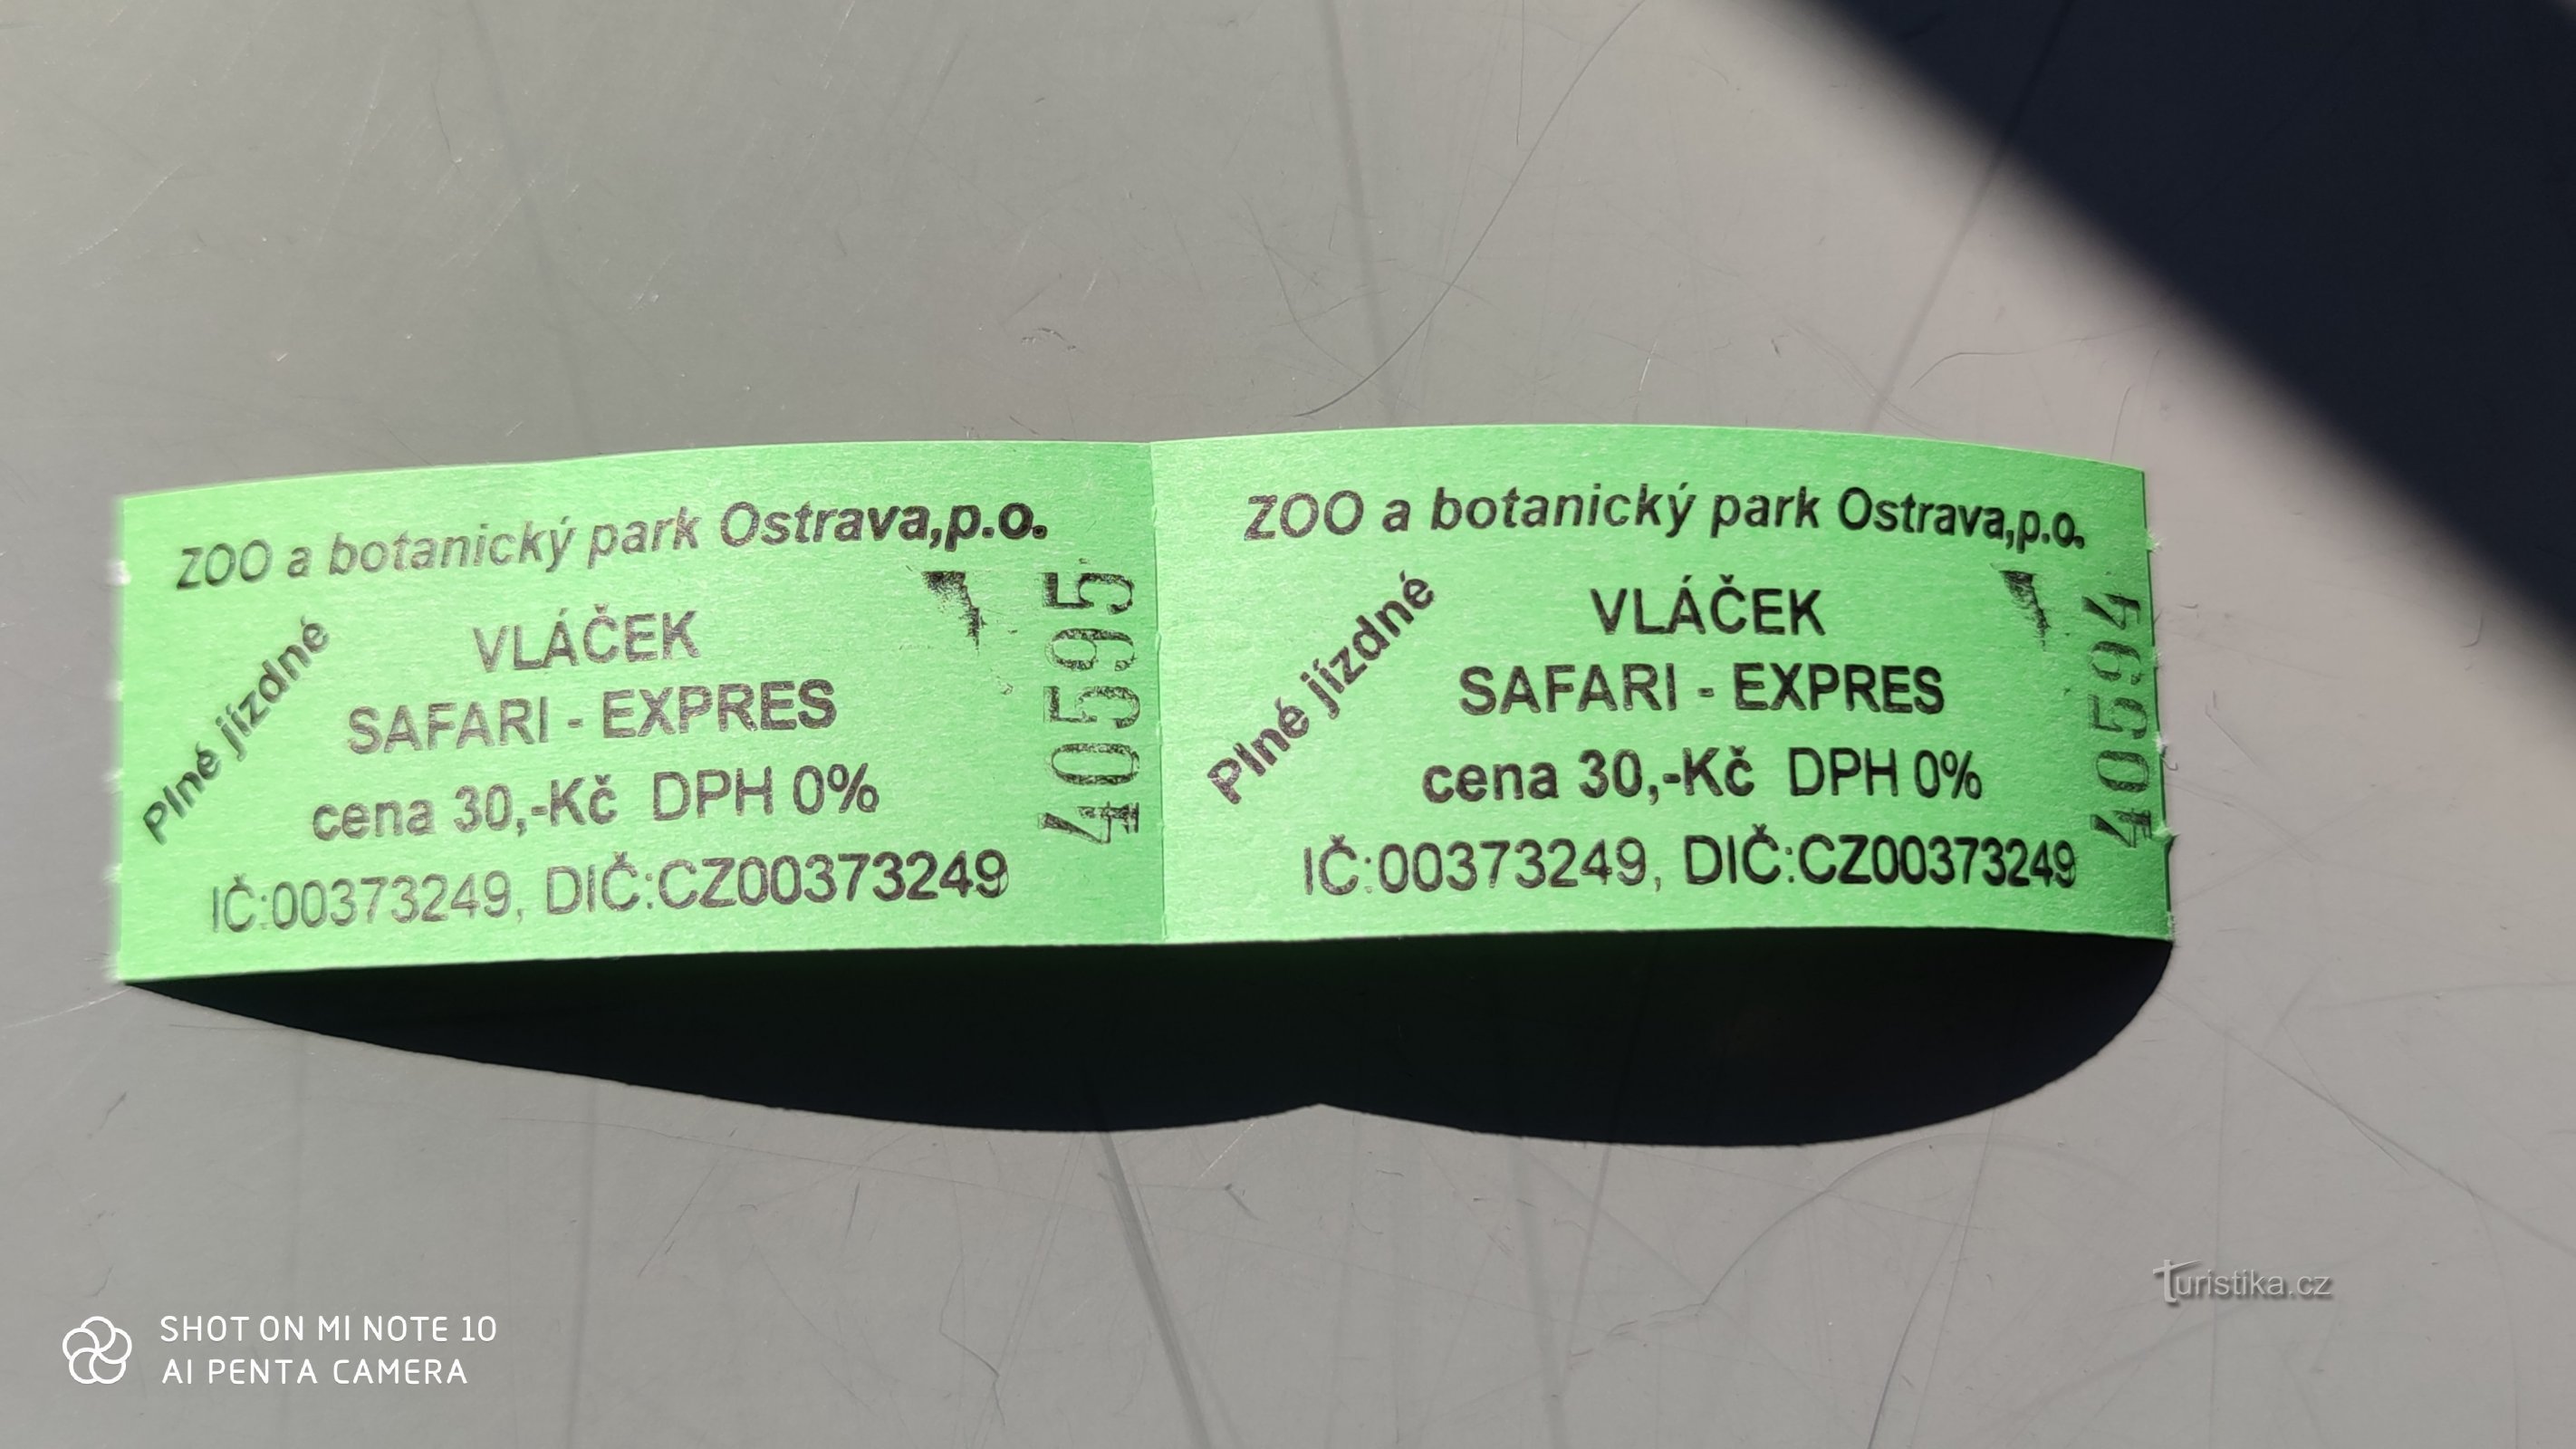 オストラヴァ動物園のサファリエクスプレス